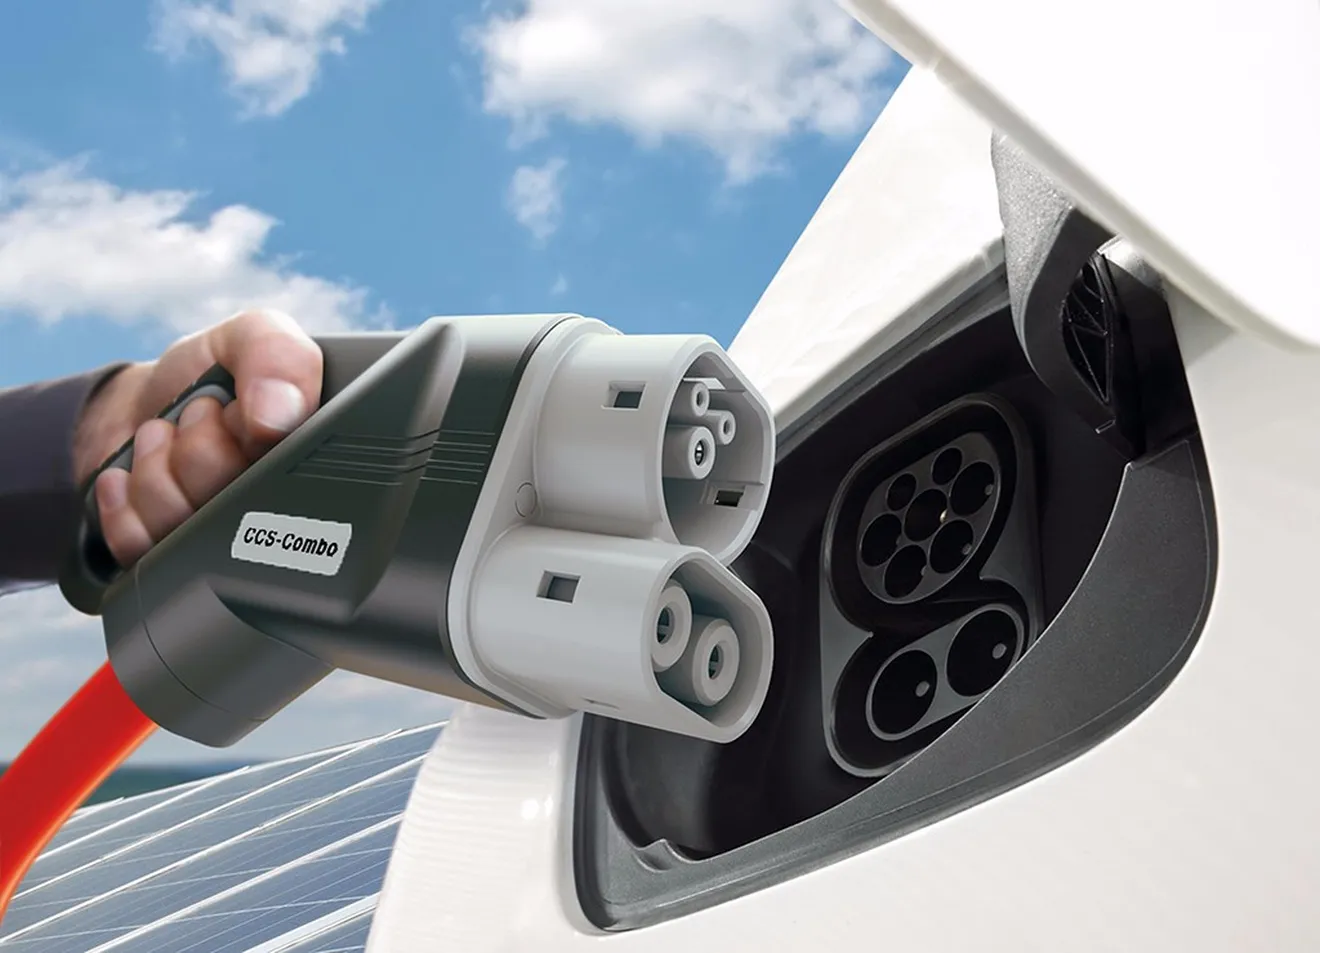 Objetivo 2020: crear en Europa una red de carga ultrarrápida para coches eléctricos